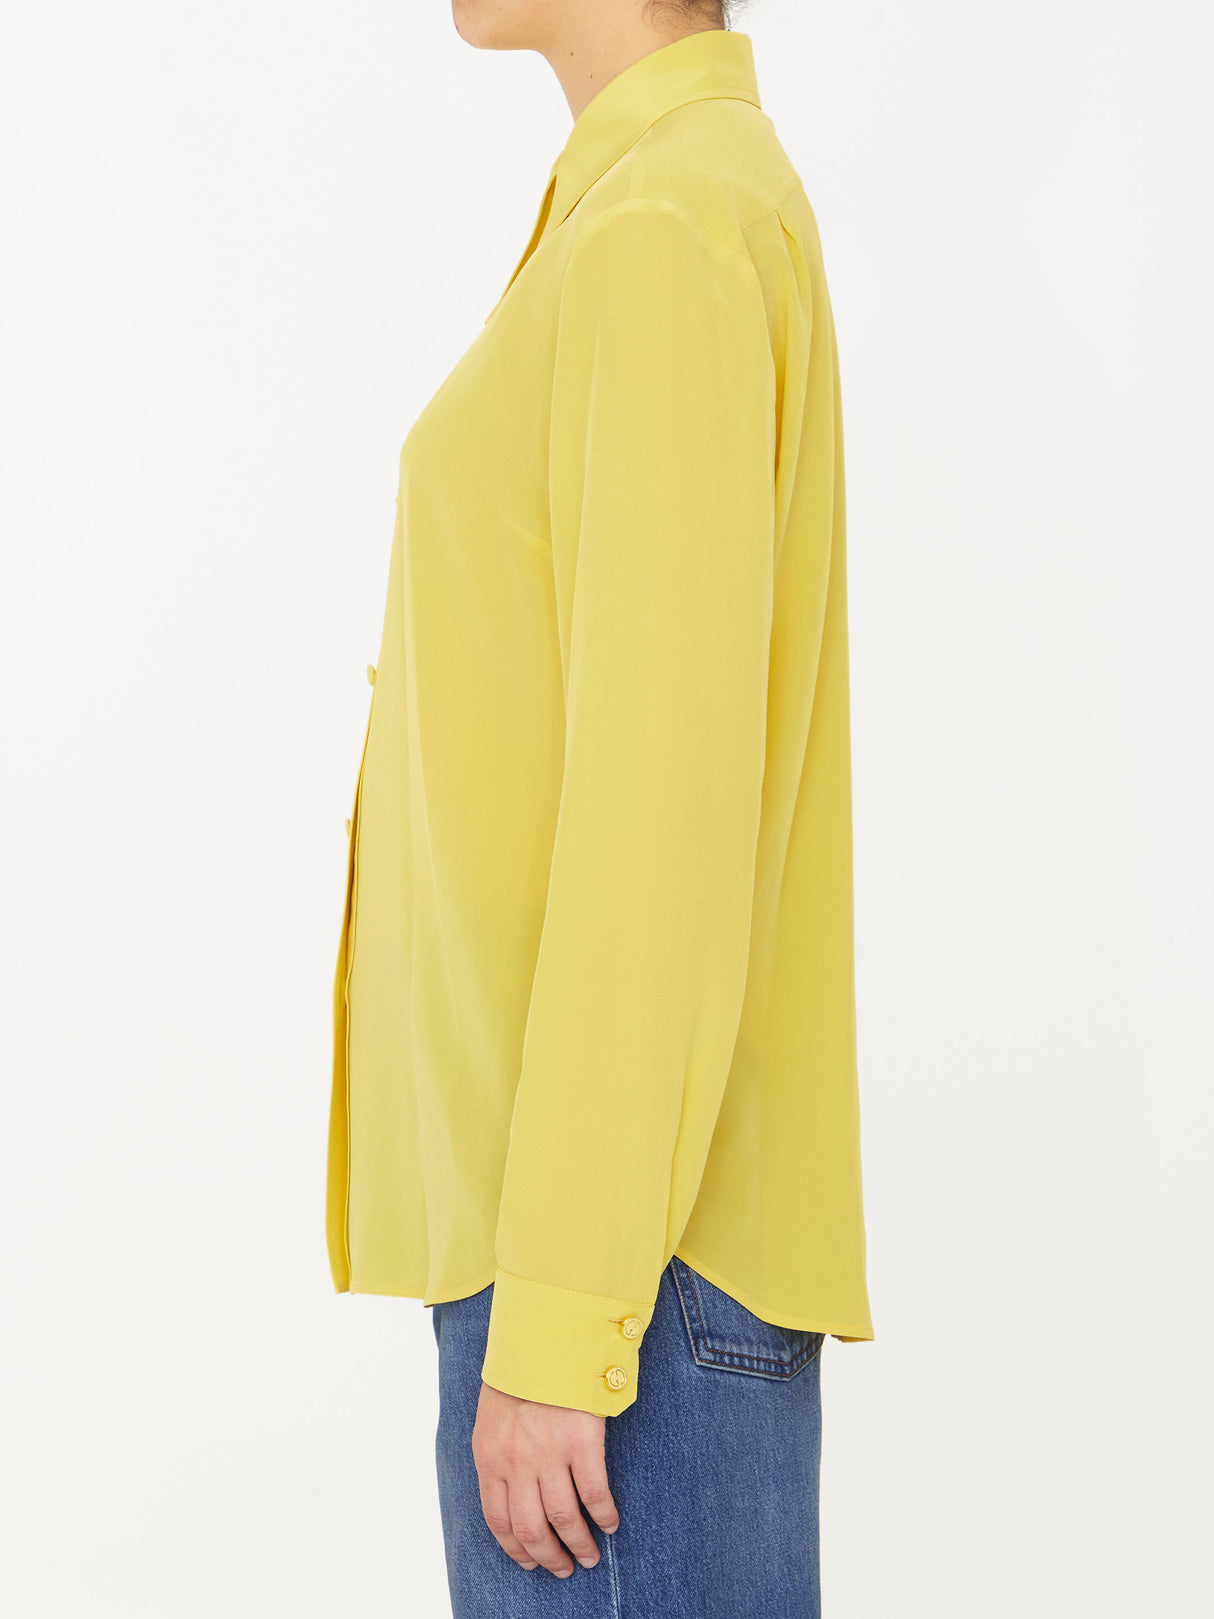 豪华丝绸垂饰衣衫：活泼的黄橙色调